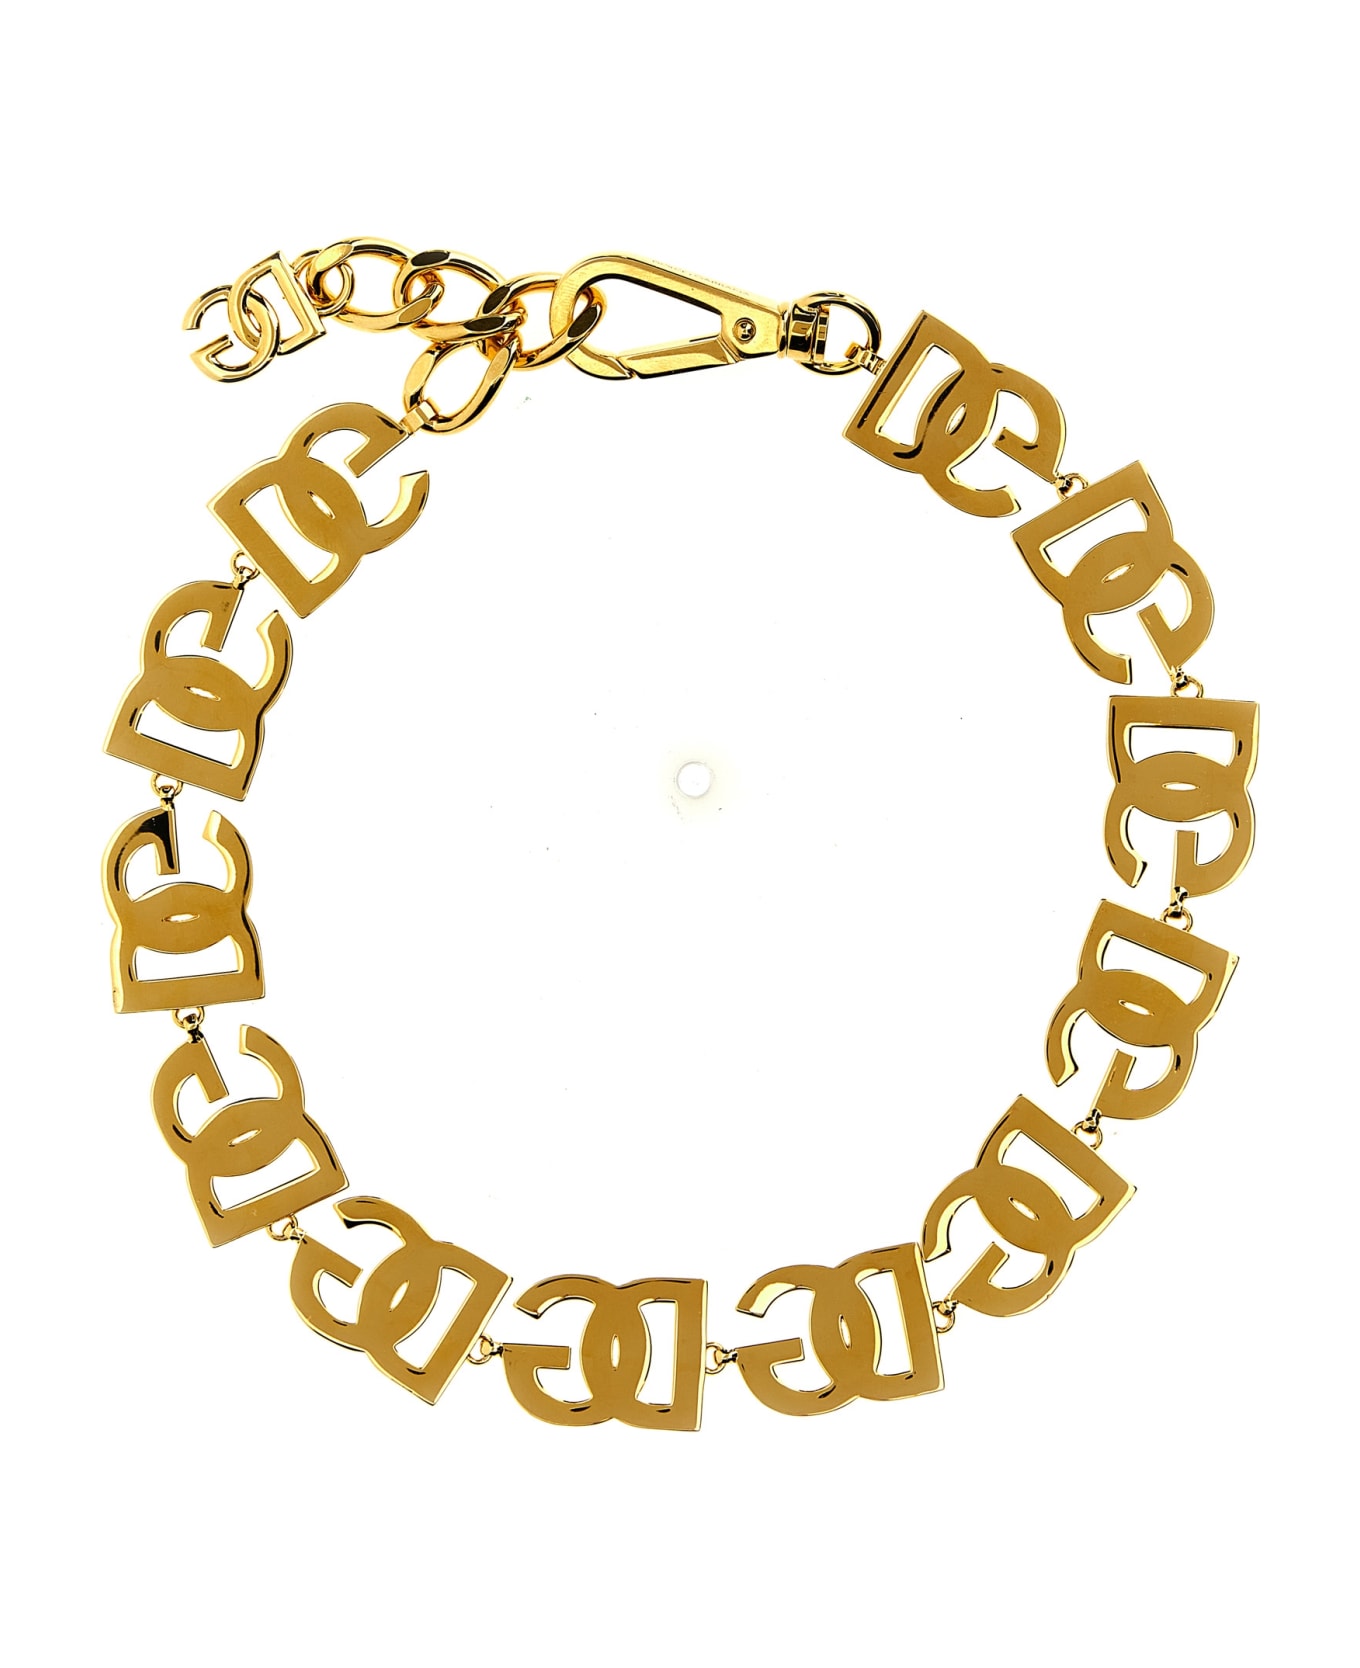 Dolce & Gabbana 'dg' Necklace - Gold ジュエリー